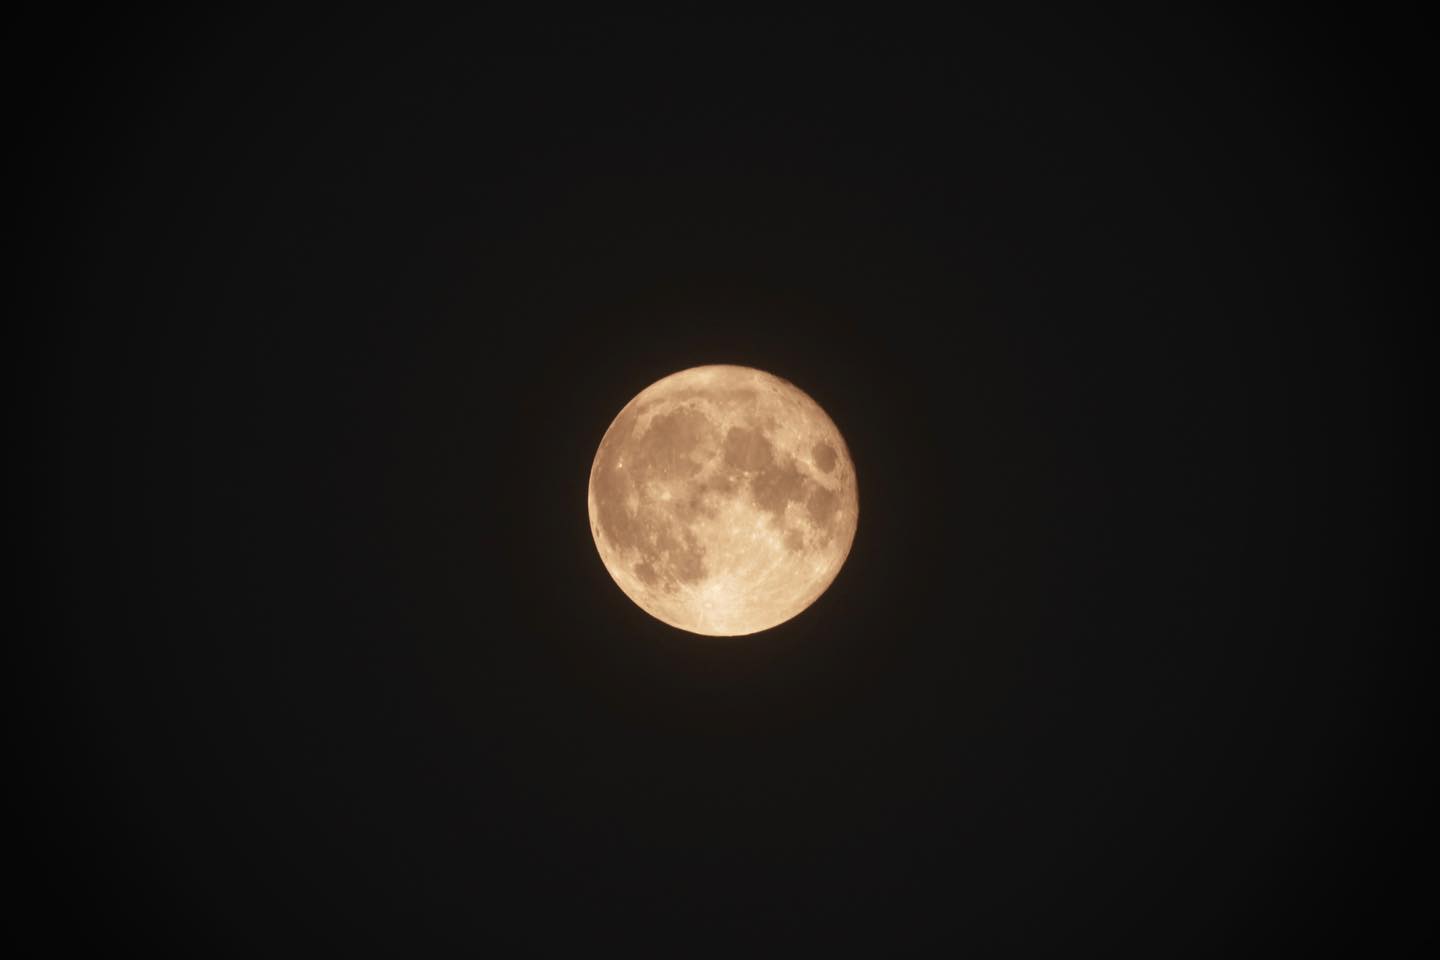 中秋の名月。今年も真夜中のベランダから。#満月#中秋の名月